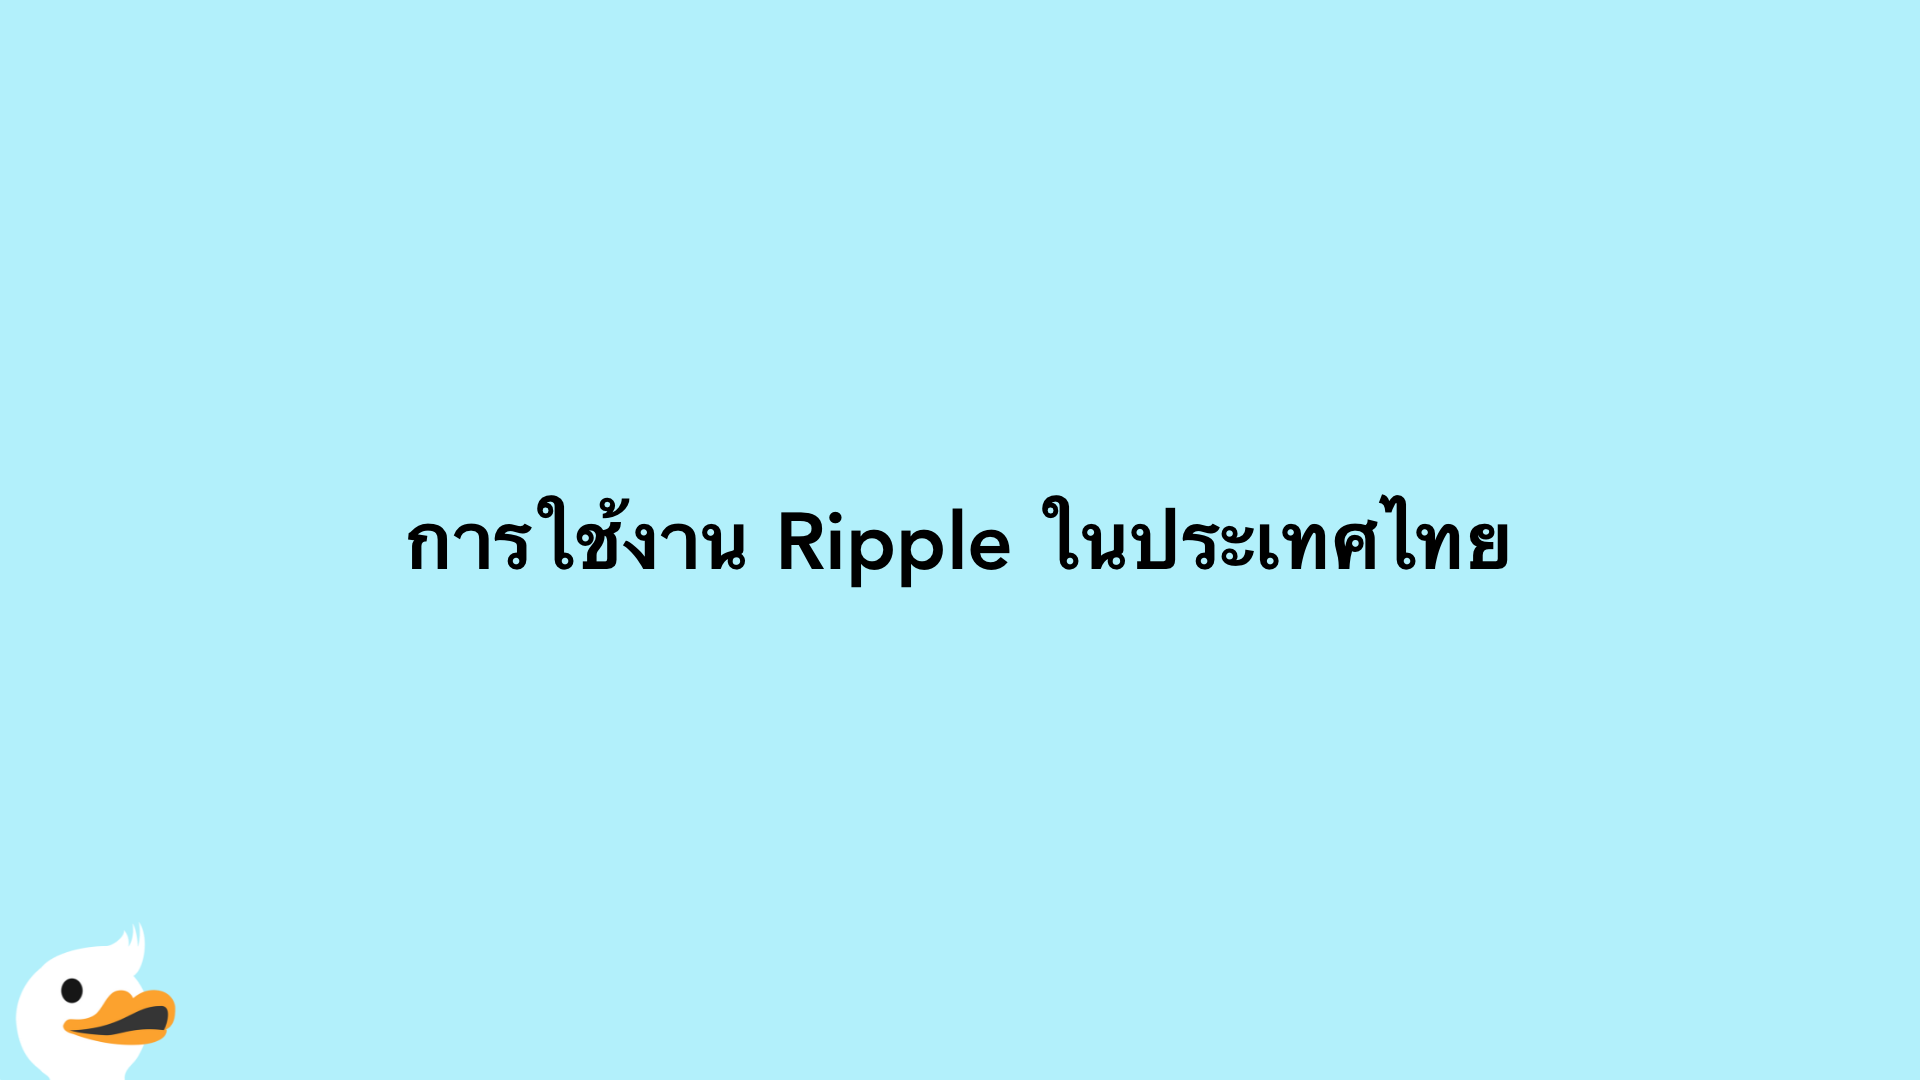 การใช้งาน Ripple ในประเทศไทย